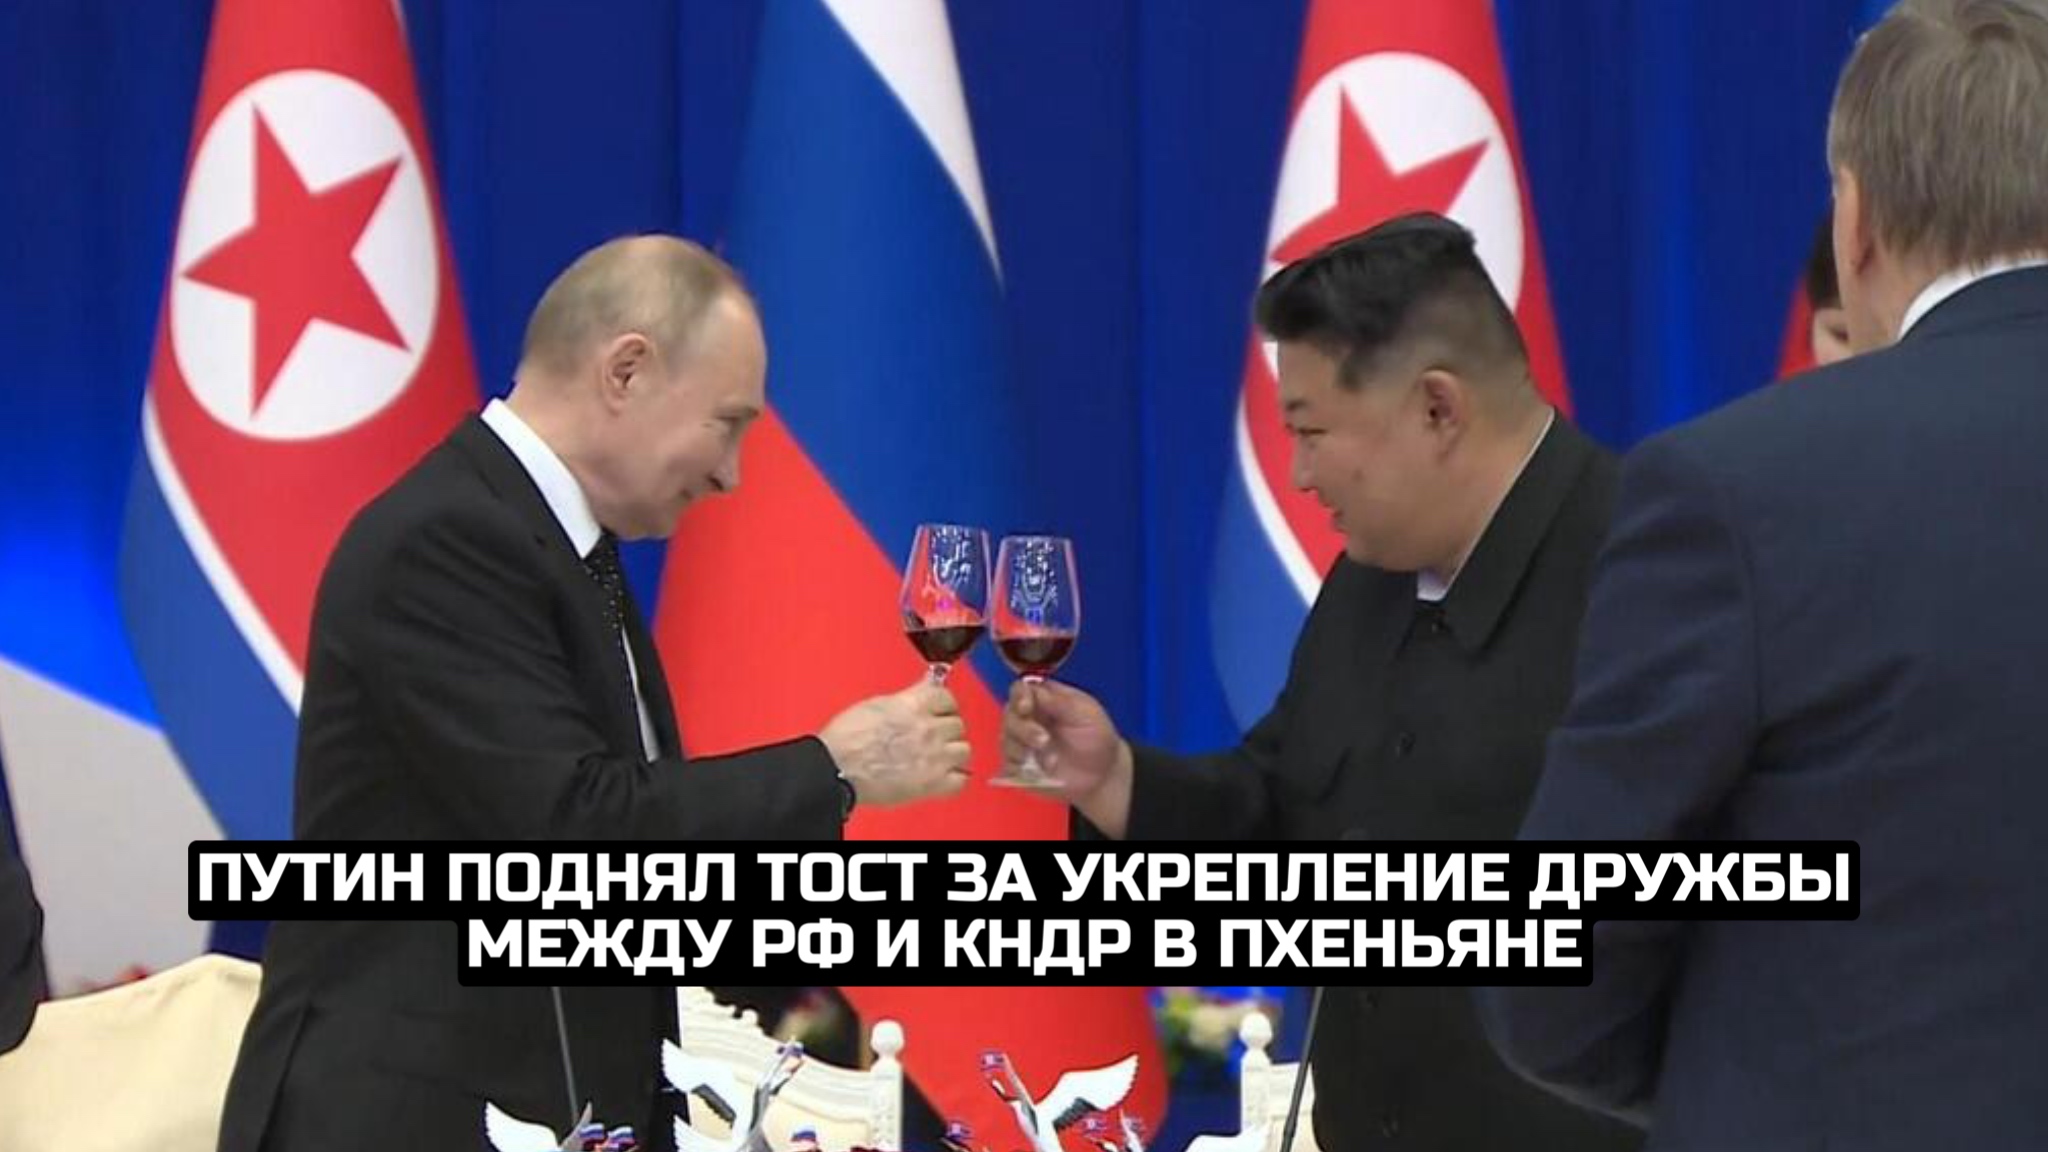 Путин поднял тост за укрепление дружбы между РФ и КНДР в Пхеньяне